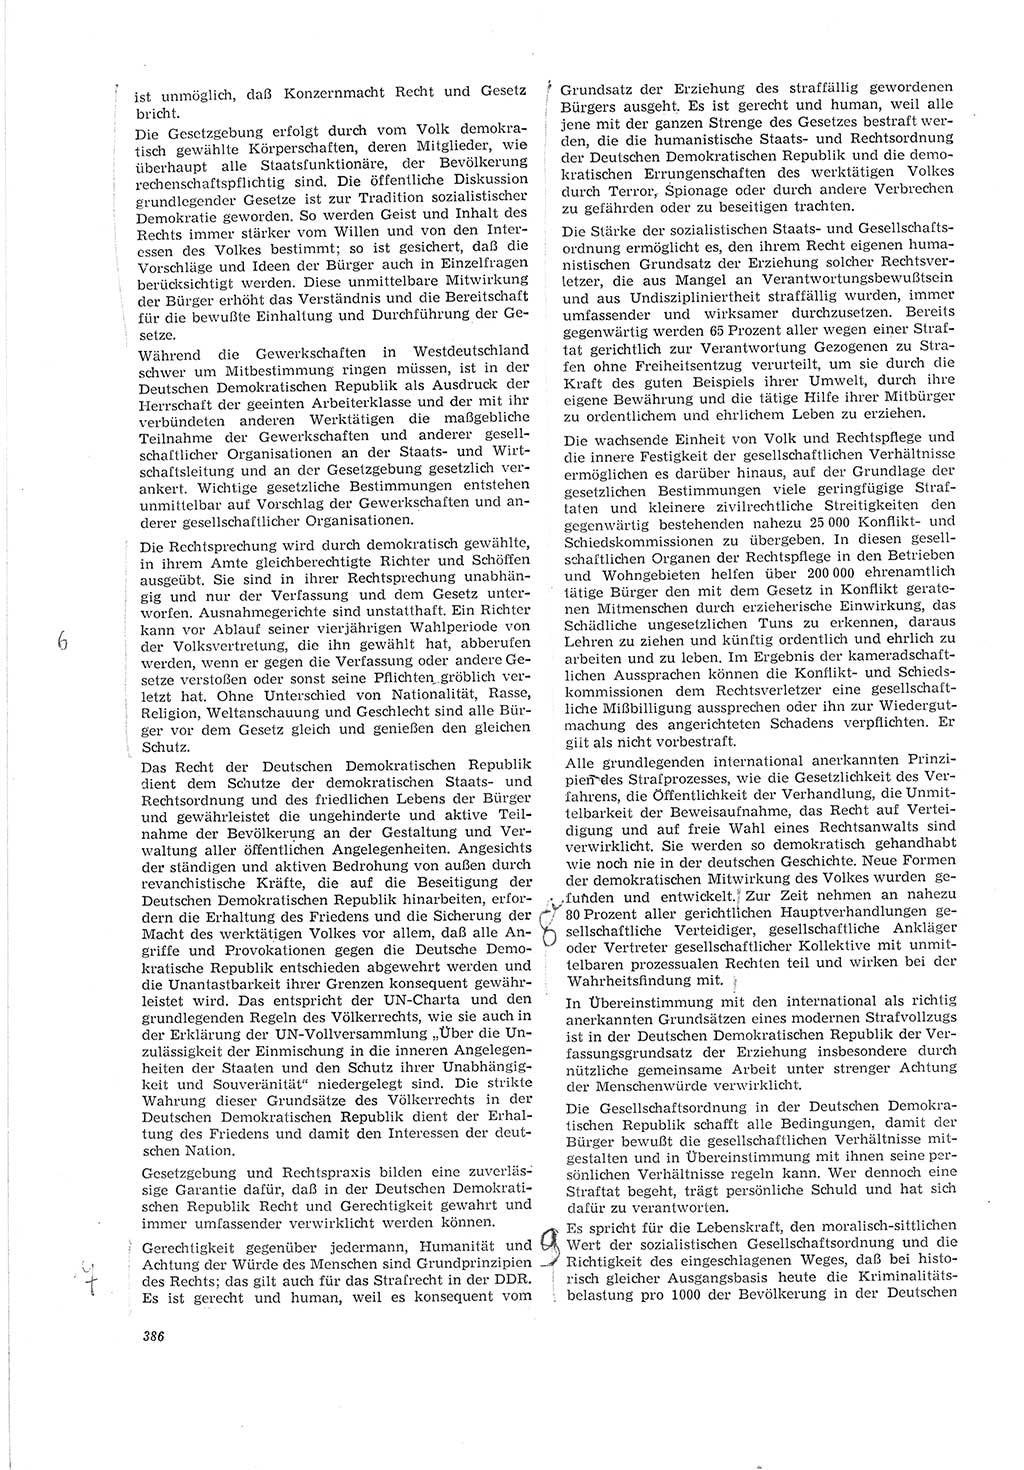 Neue Justiz (NJ), Zeitschrift für Recht und Rechtswissenschaft [Deutsche Demokratische Republik (DDR)], 20. Jahrgang 1966, Seite 386 (NJ DDR 1966, S. 386)